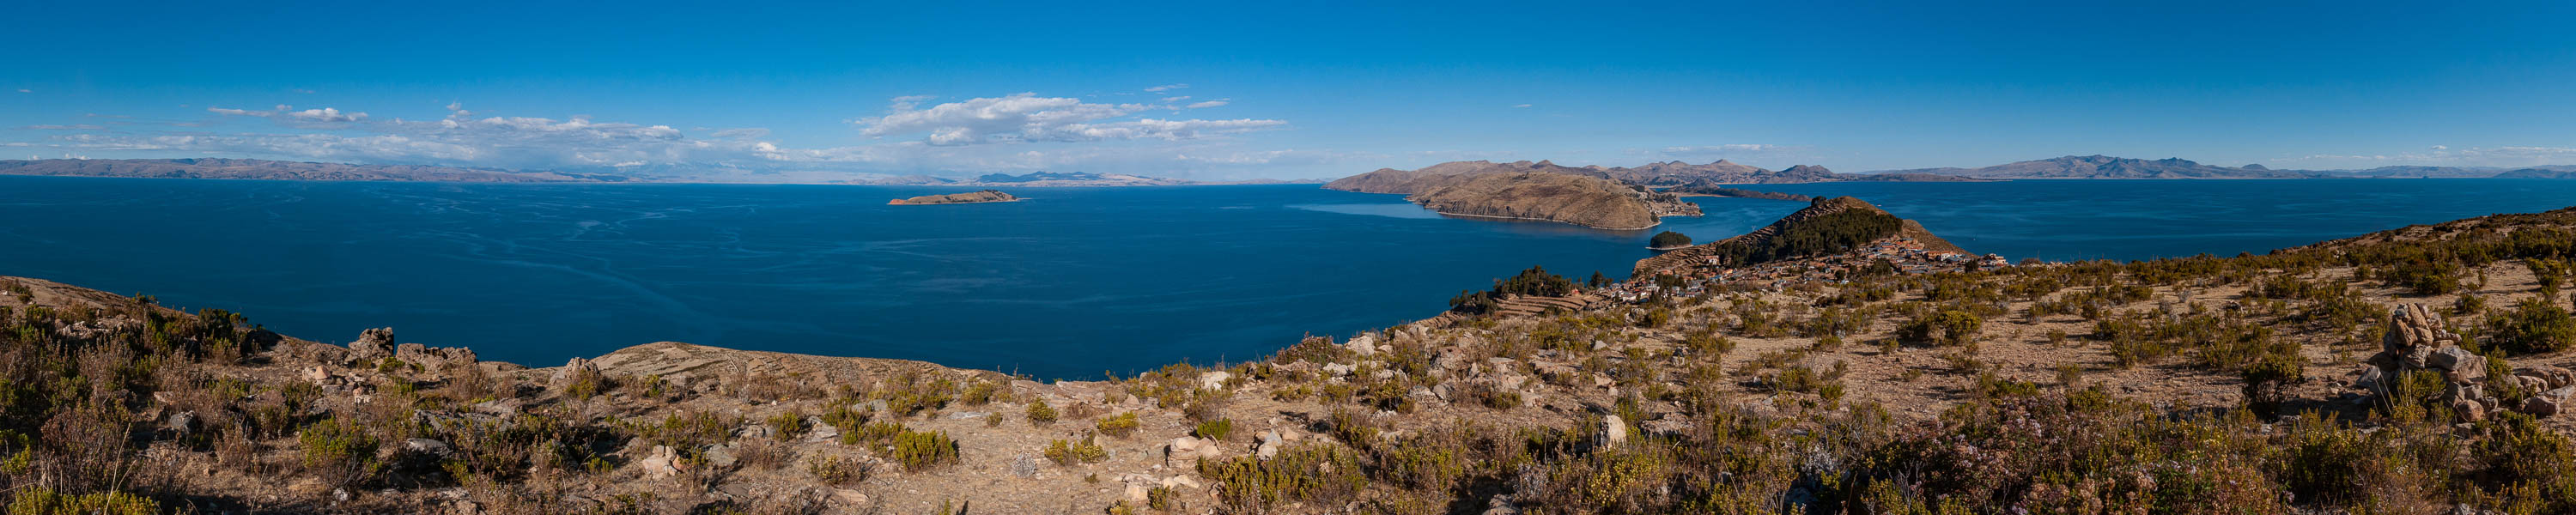 Lac Titicaca : île du Soleil, vue du phare de Yumani